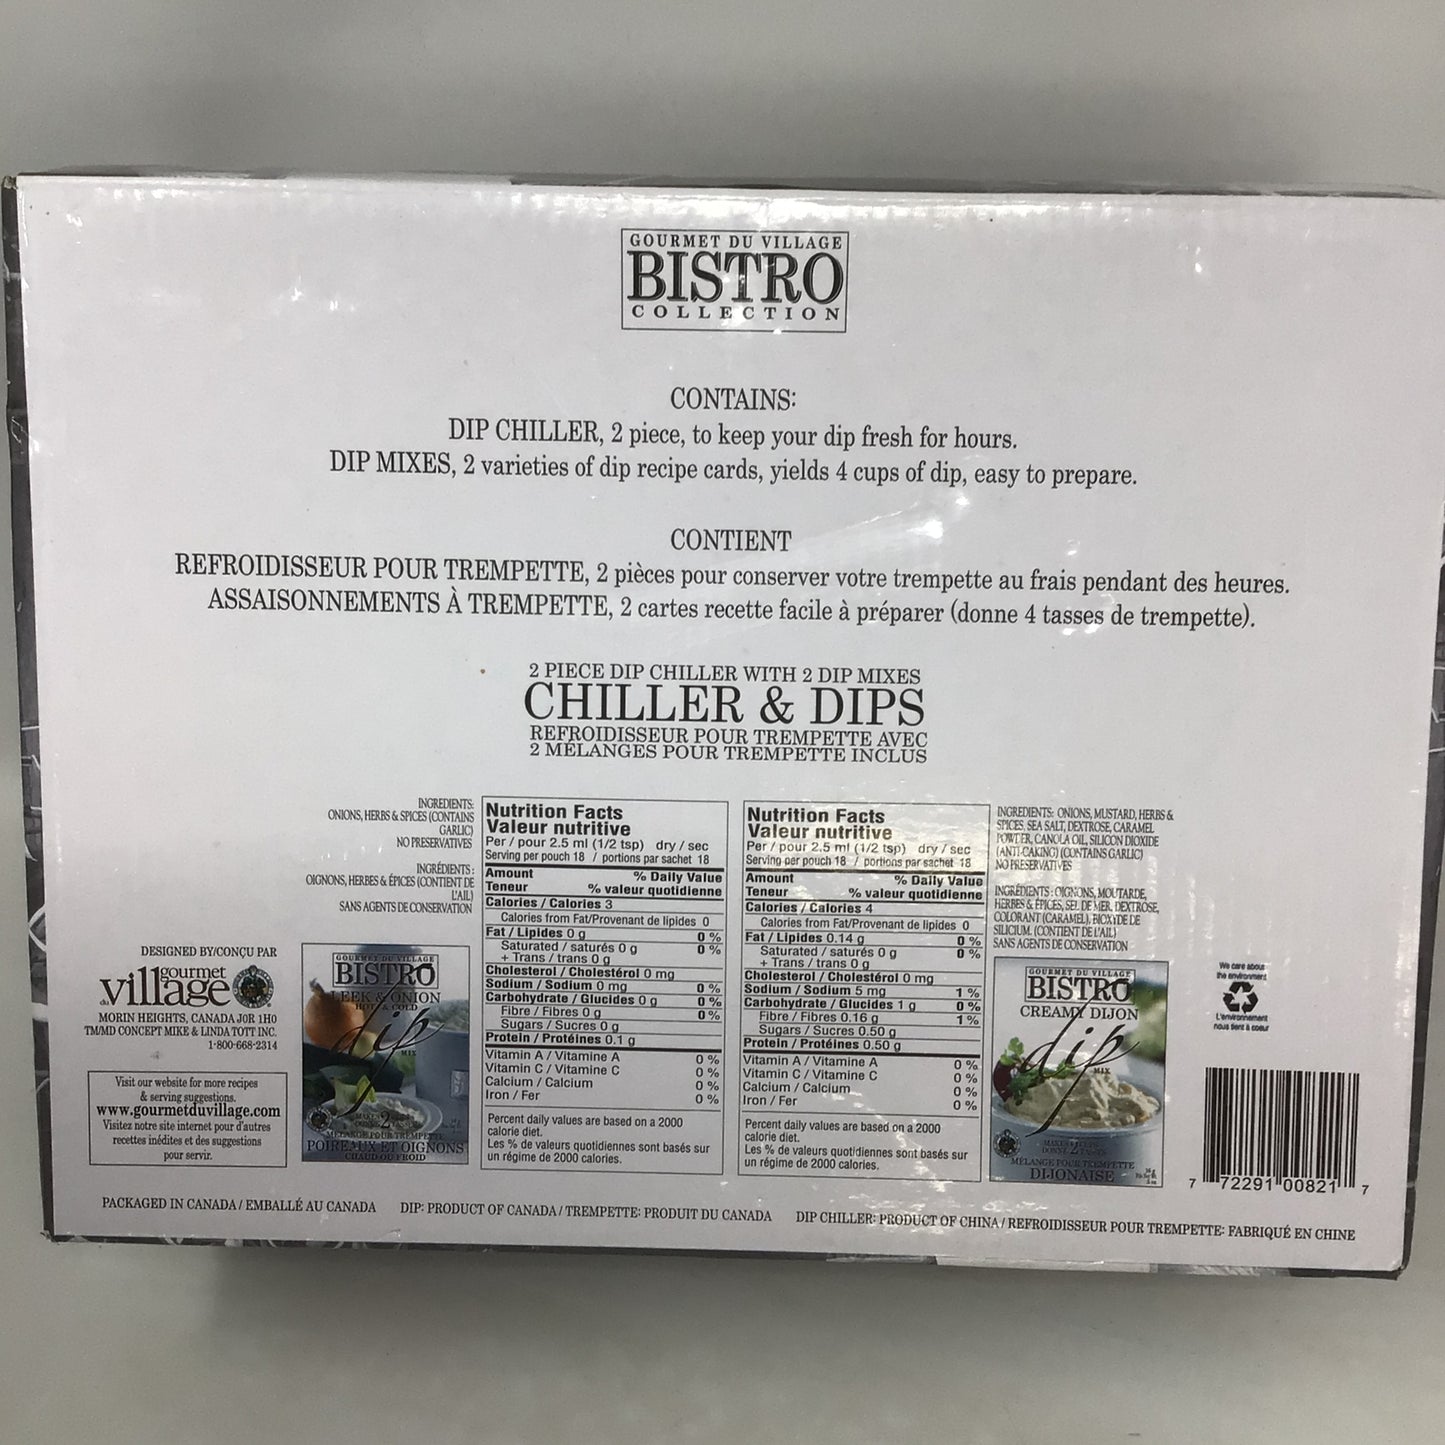 Gourmet Du Village Bistro Collection - Dip Chiller Set